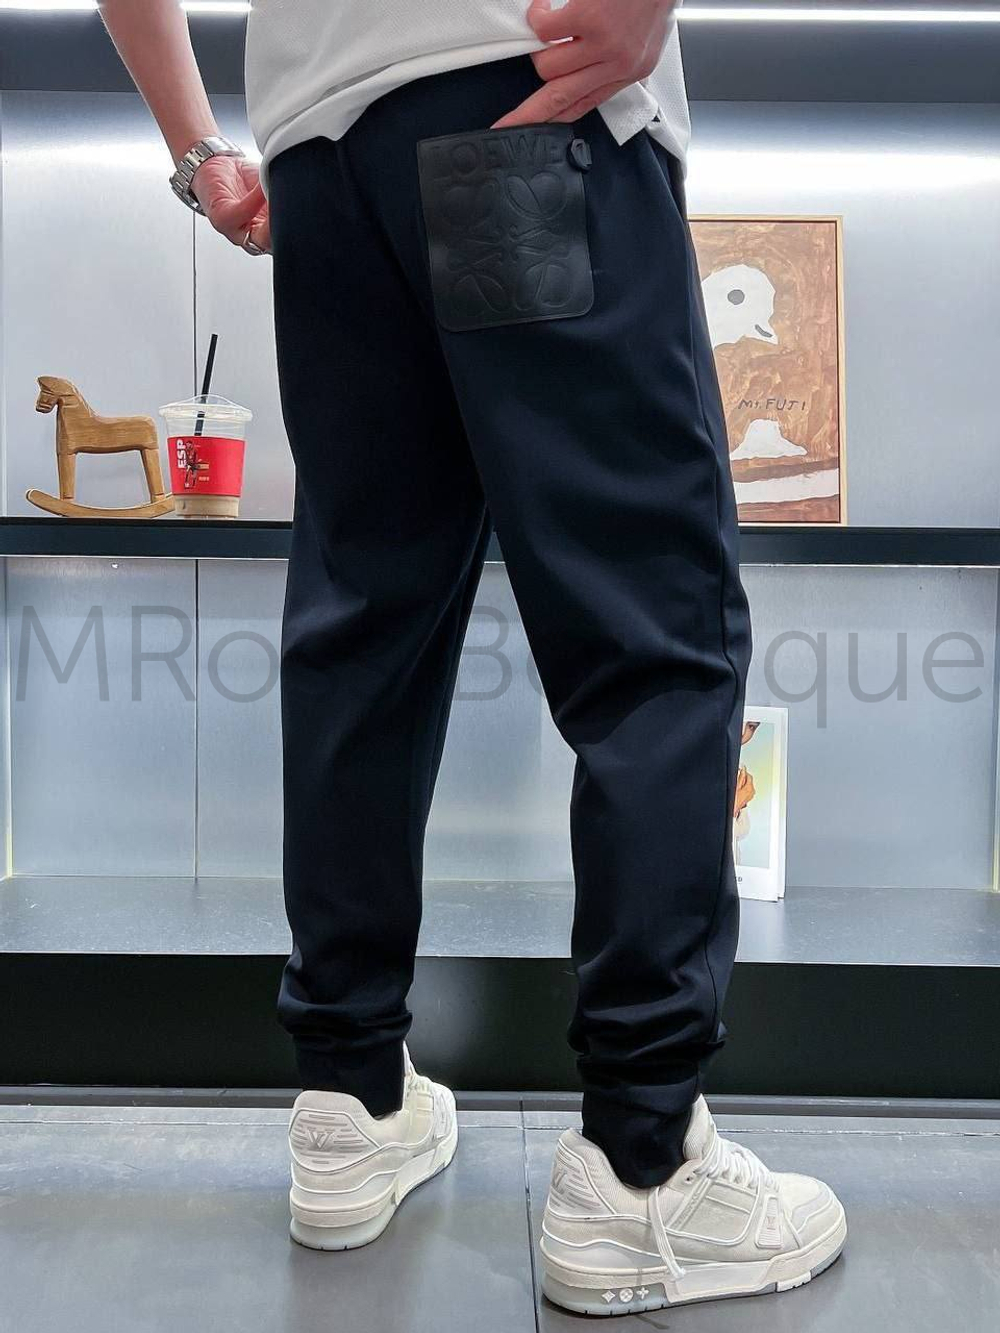 Мужские спортивные штаны Loewe с вышивкой и кожаным карманом